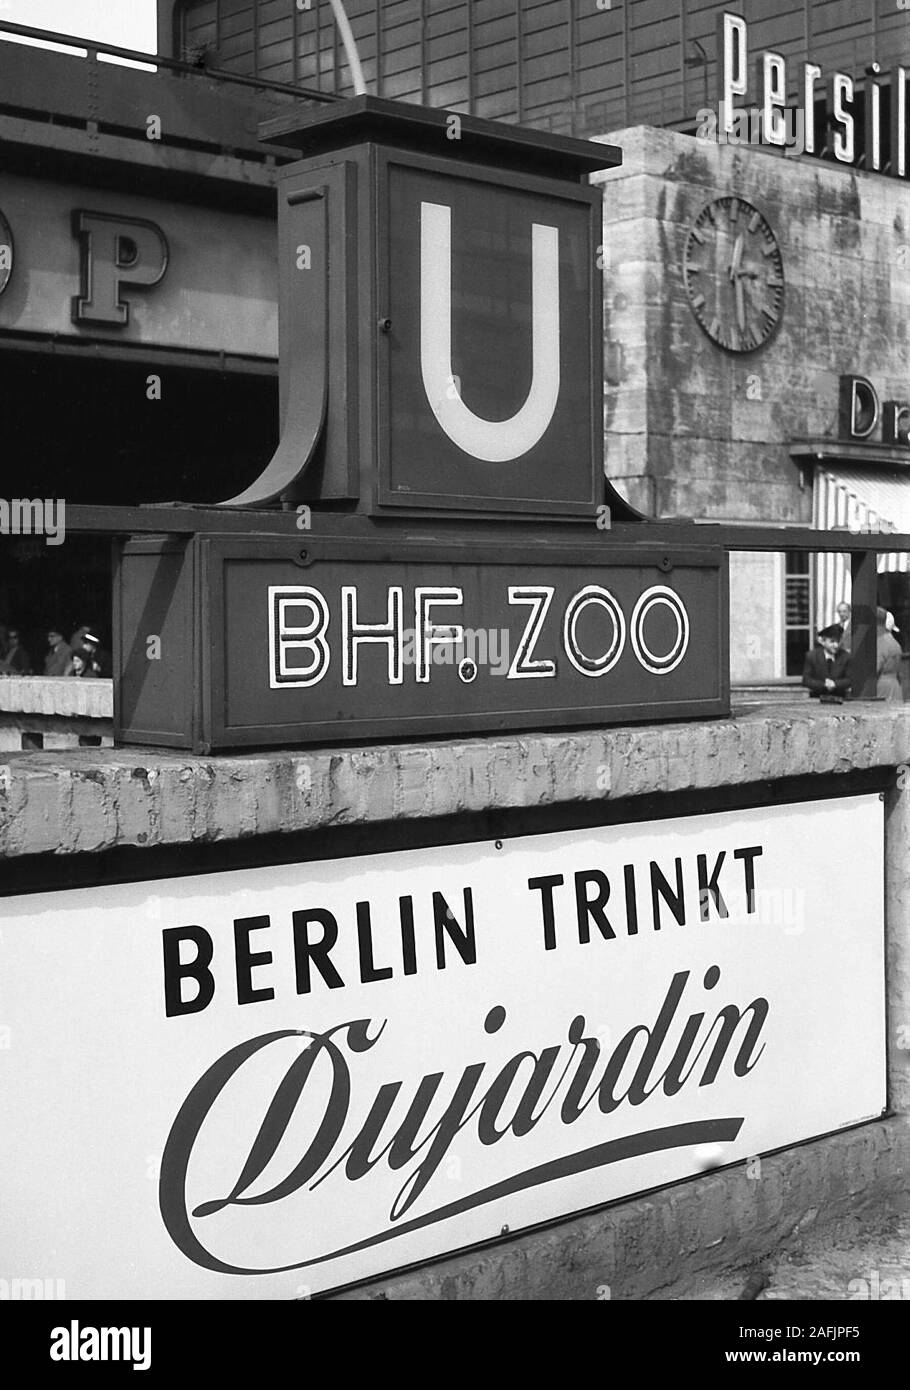 Advertising ('Berlin drinks Dujardin') at the Bahnhof Zoologischer Garten in Berlin. Stock Photo